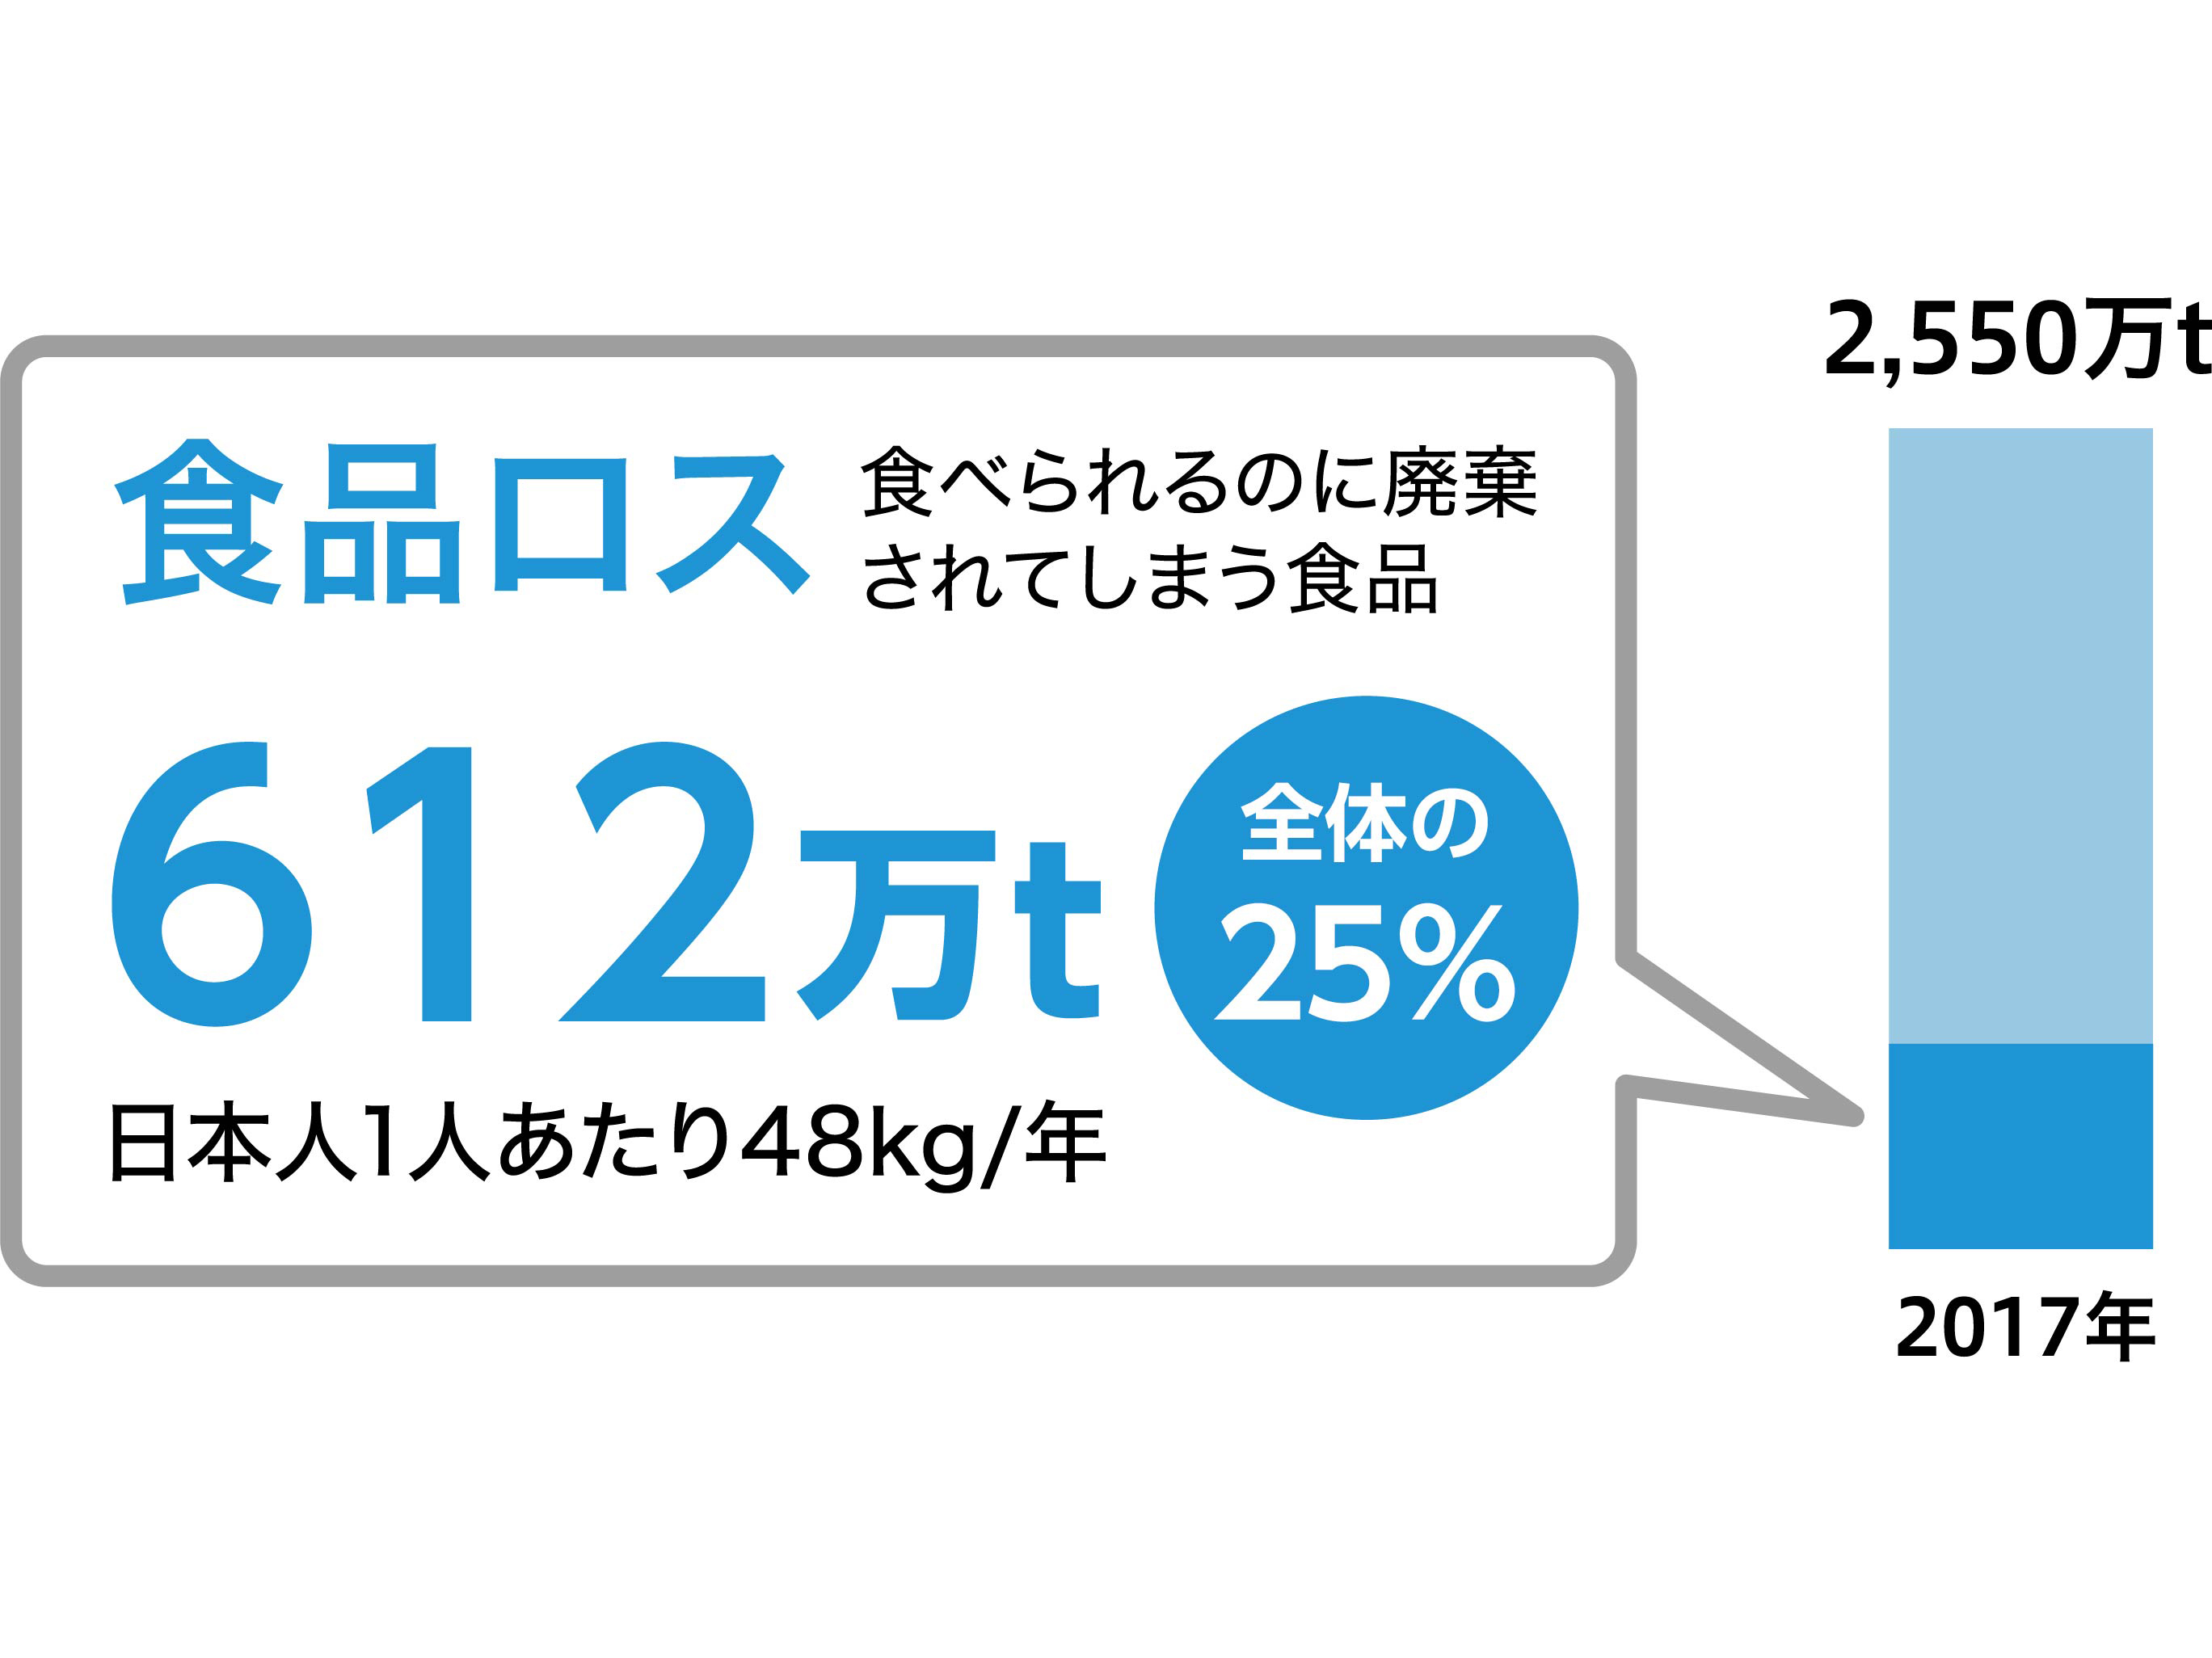 日本食品ロスの量